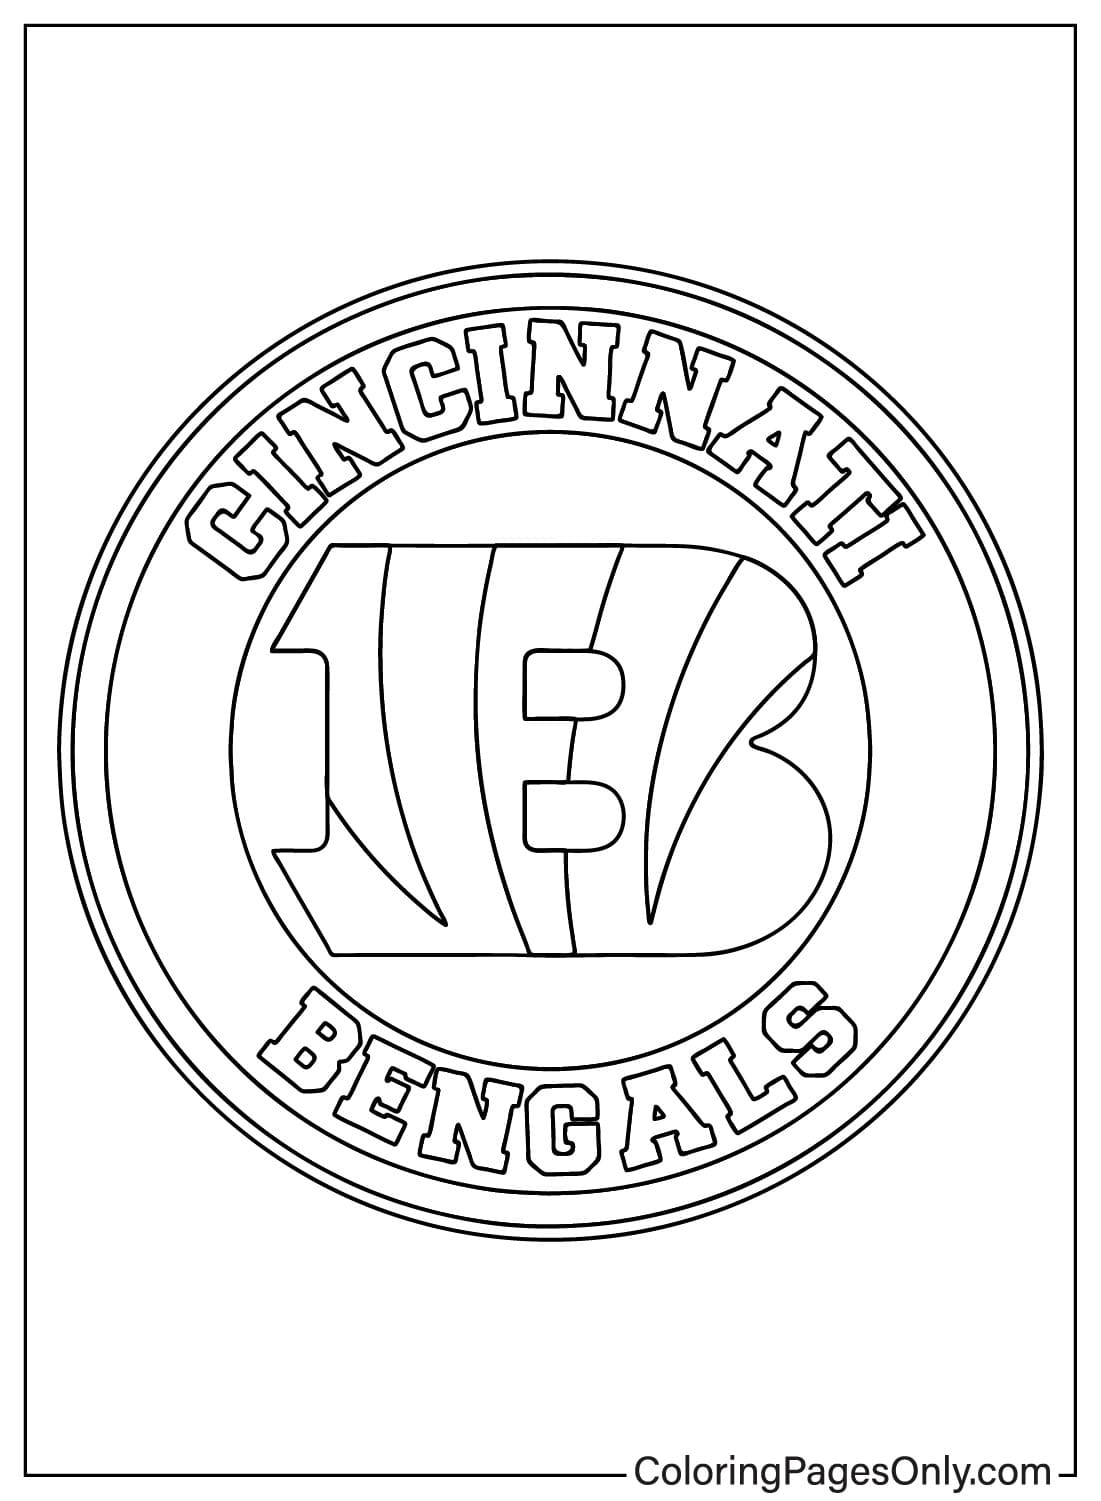 Imprimer la page à colorier des Bengals de Cincinnati des Bengals de Cincinnati